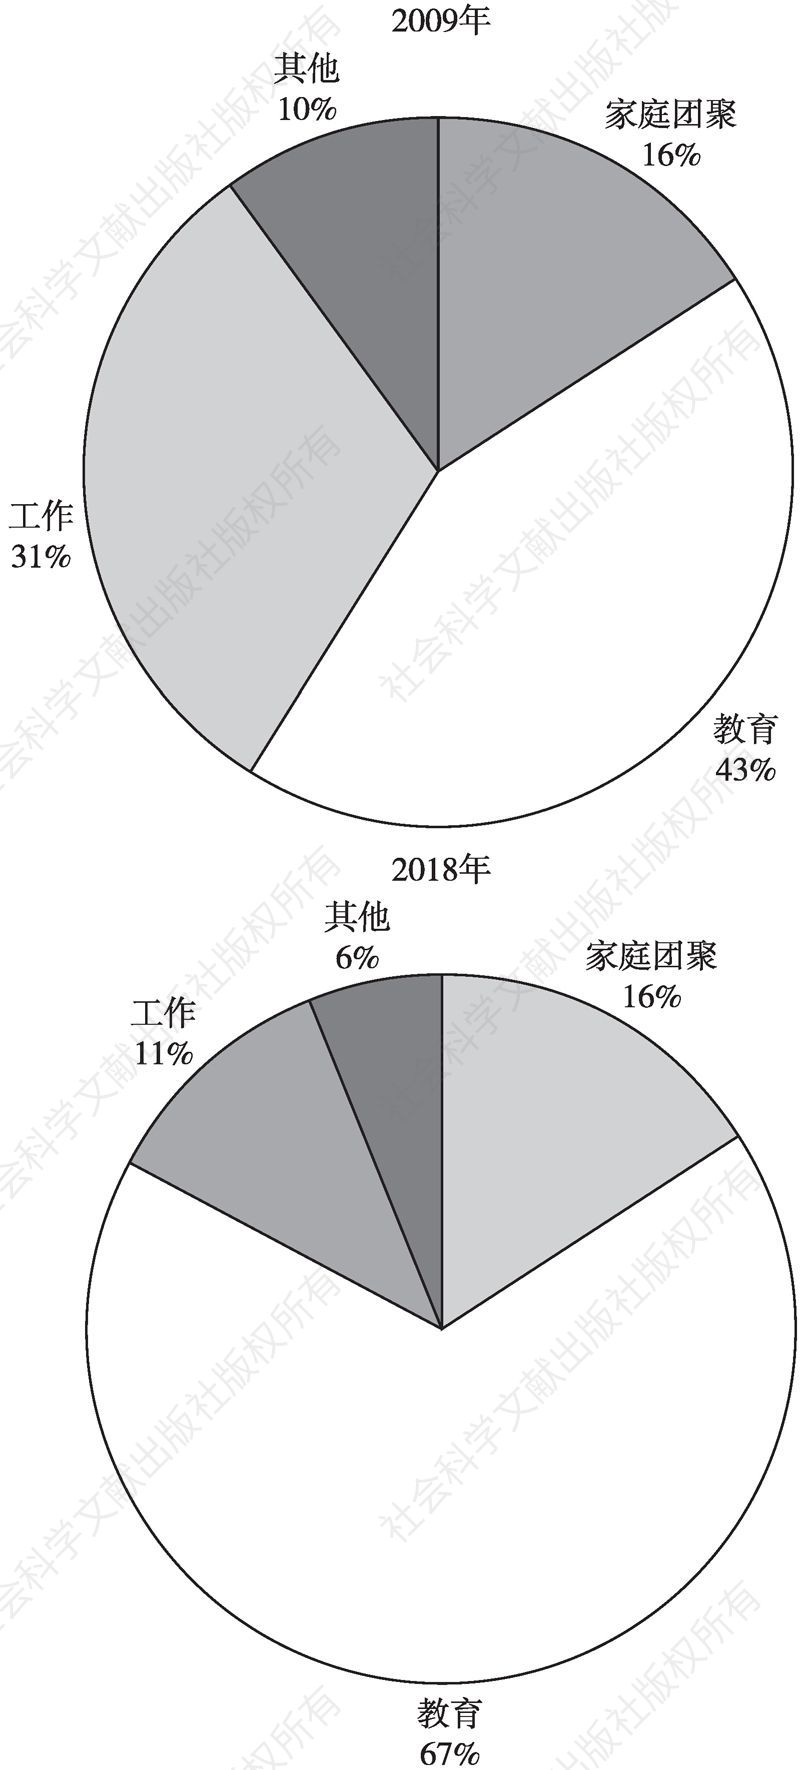 图1 2009年与2018年首次获得欧盟居留许可的中国公民居留目的统计